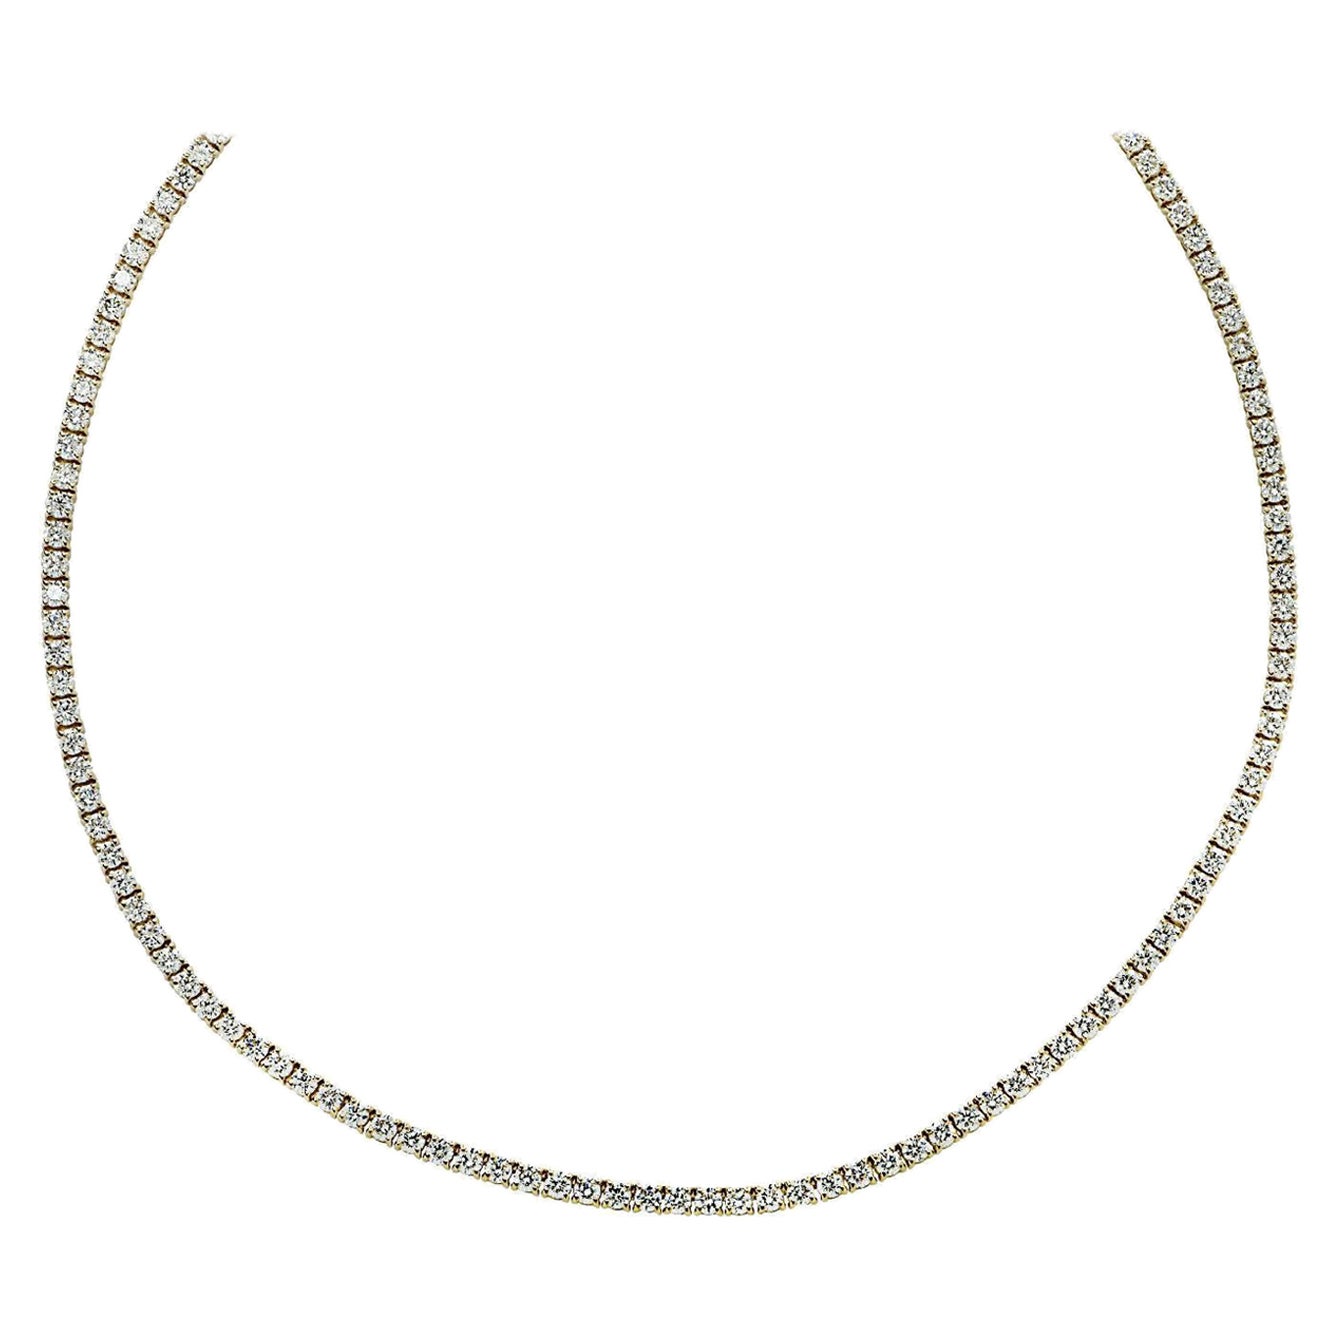 Vivid Diamonds Straight Line 3.59 Carat Diamond Tennis Necklace